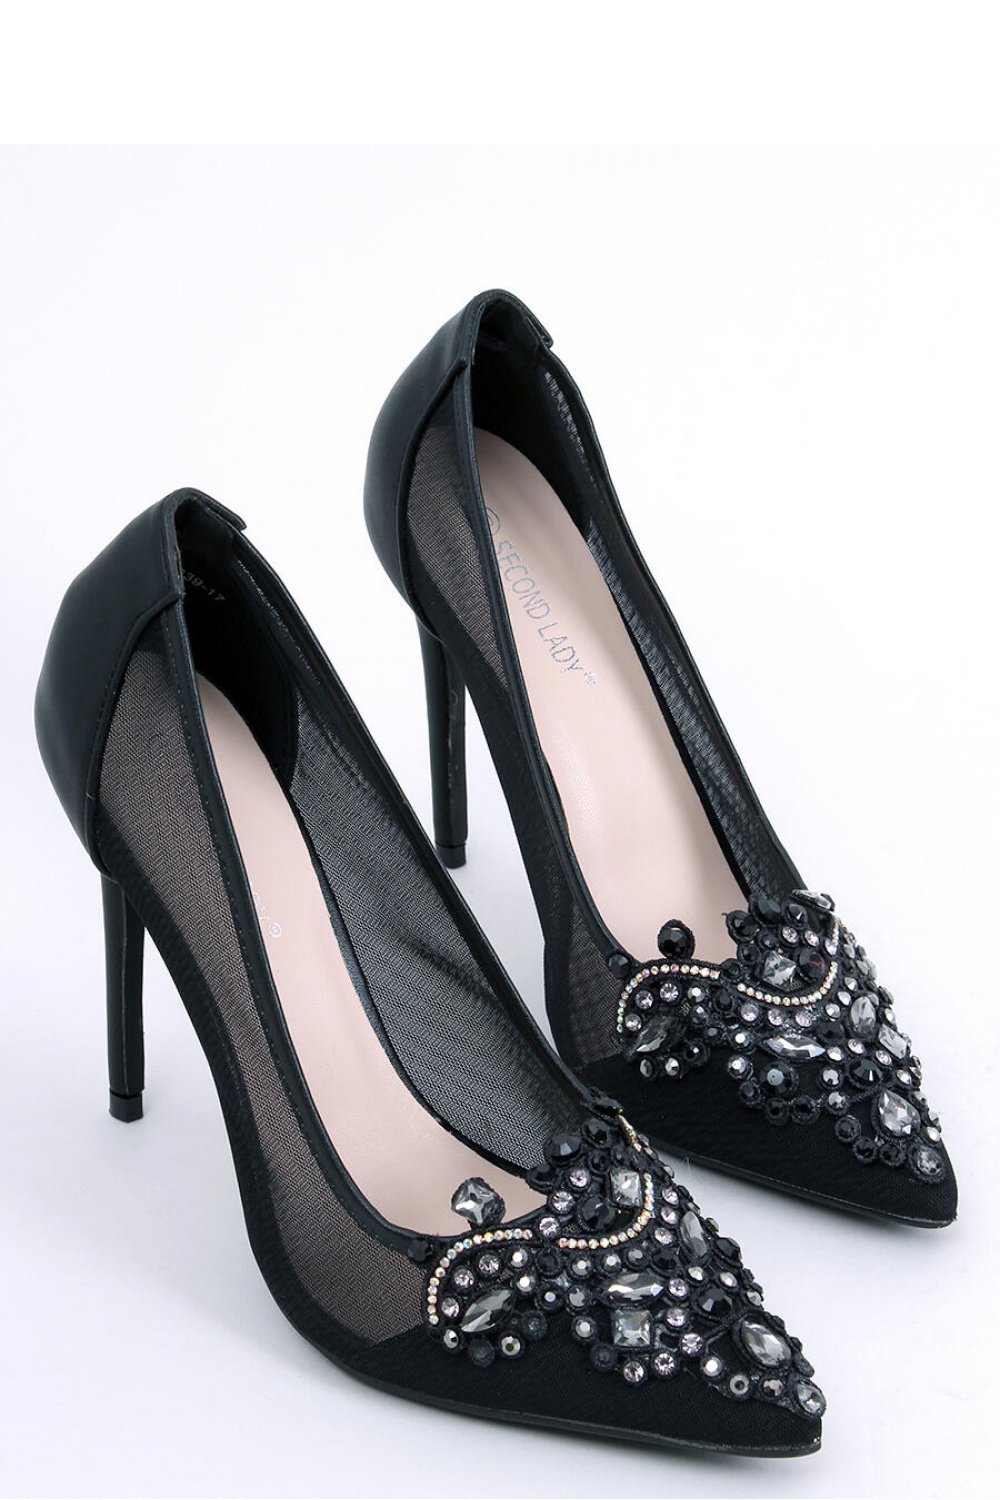 High heels model 174109 Inello